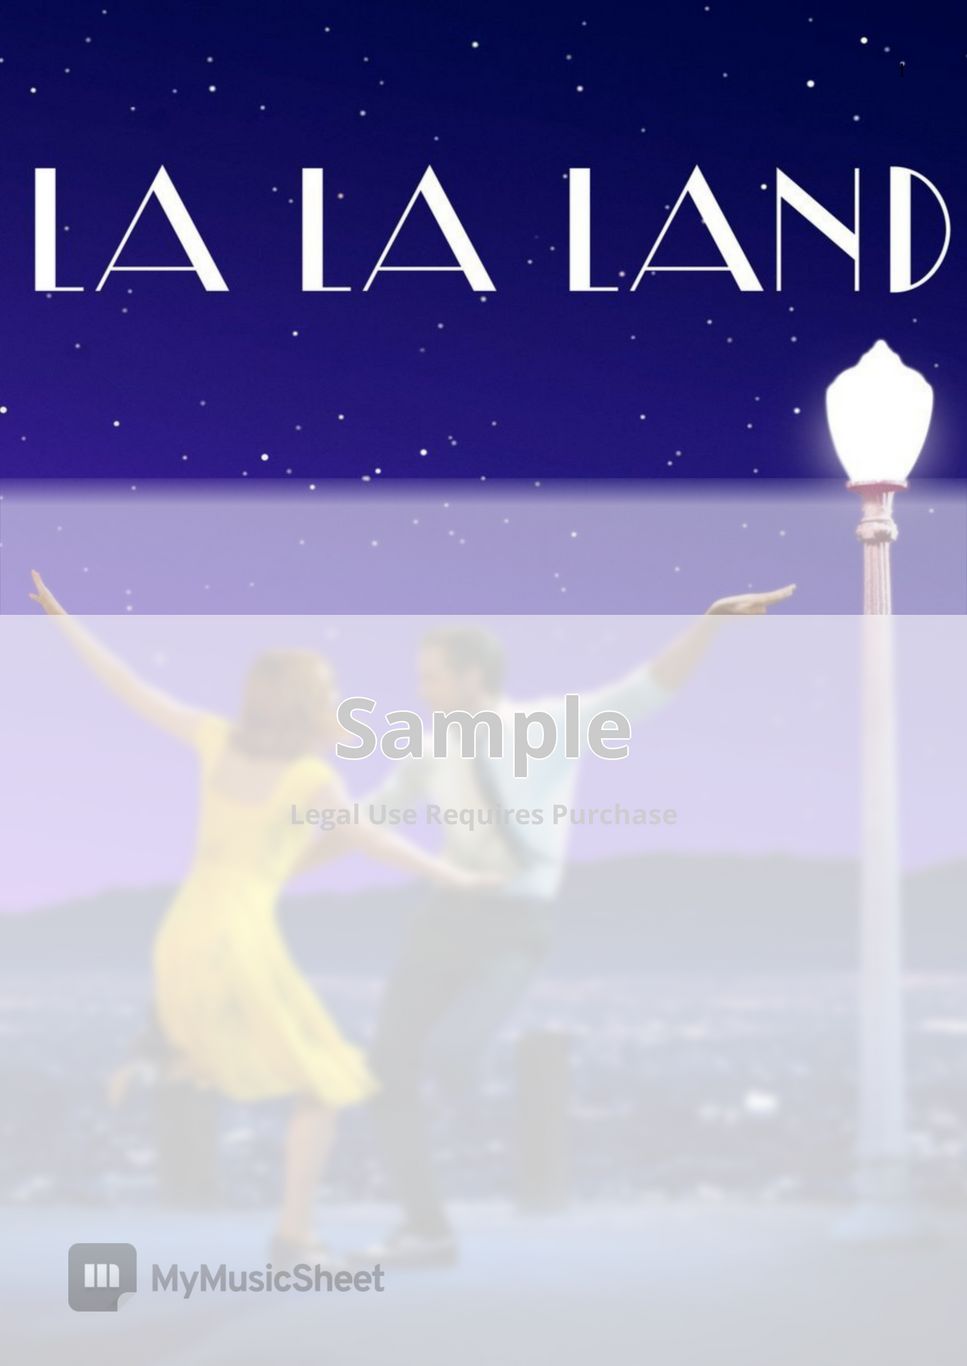 La La Land / Justin Hurwitz - Mia and Sebastian's Theme - Intermidiate (for Piano Solo)